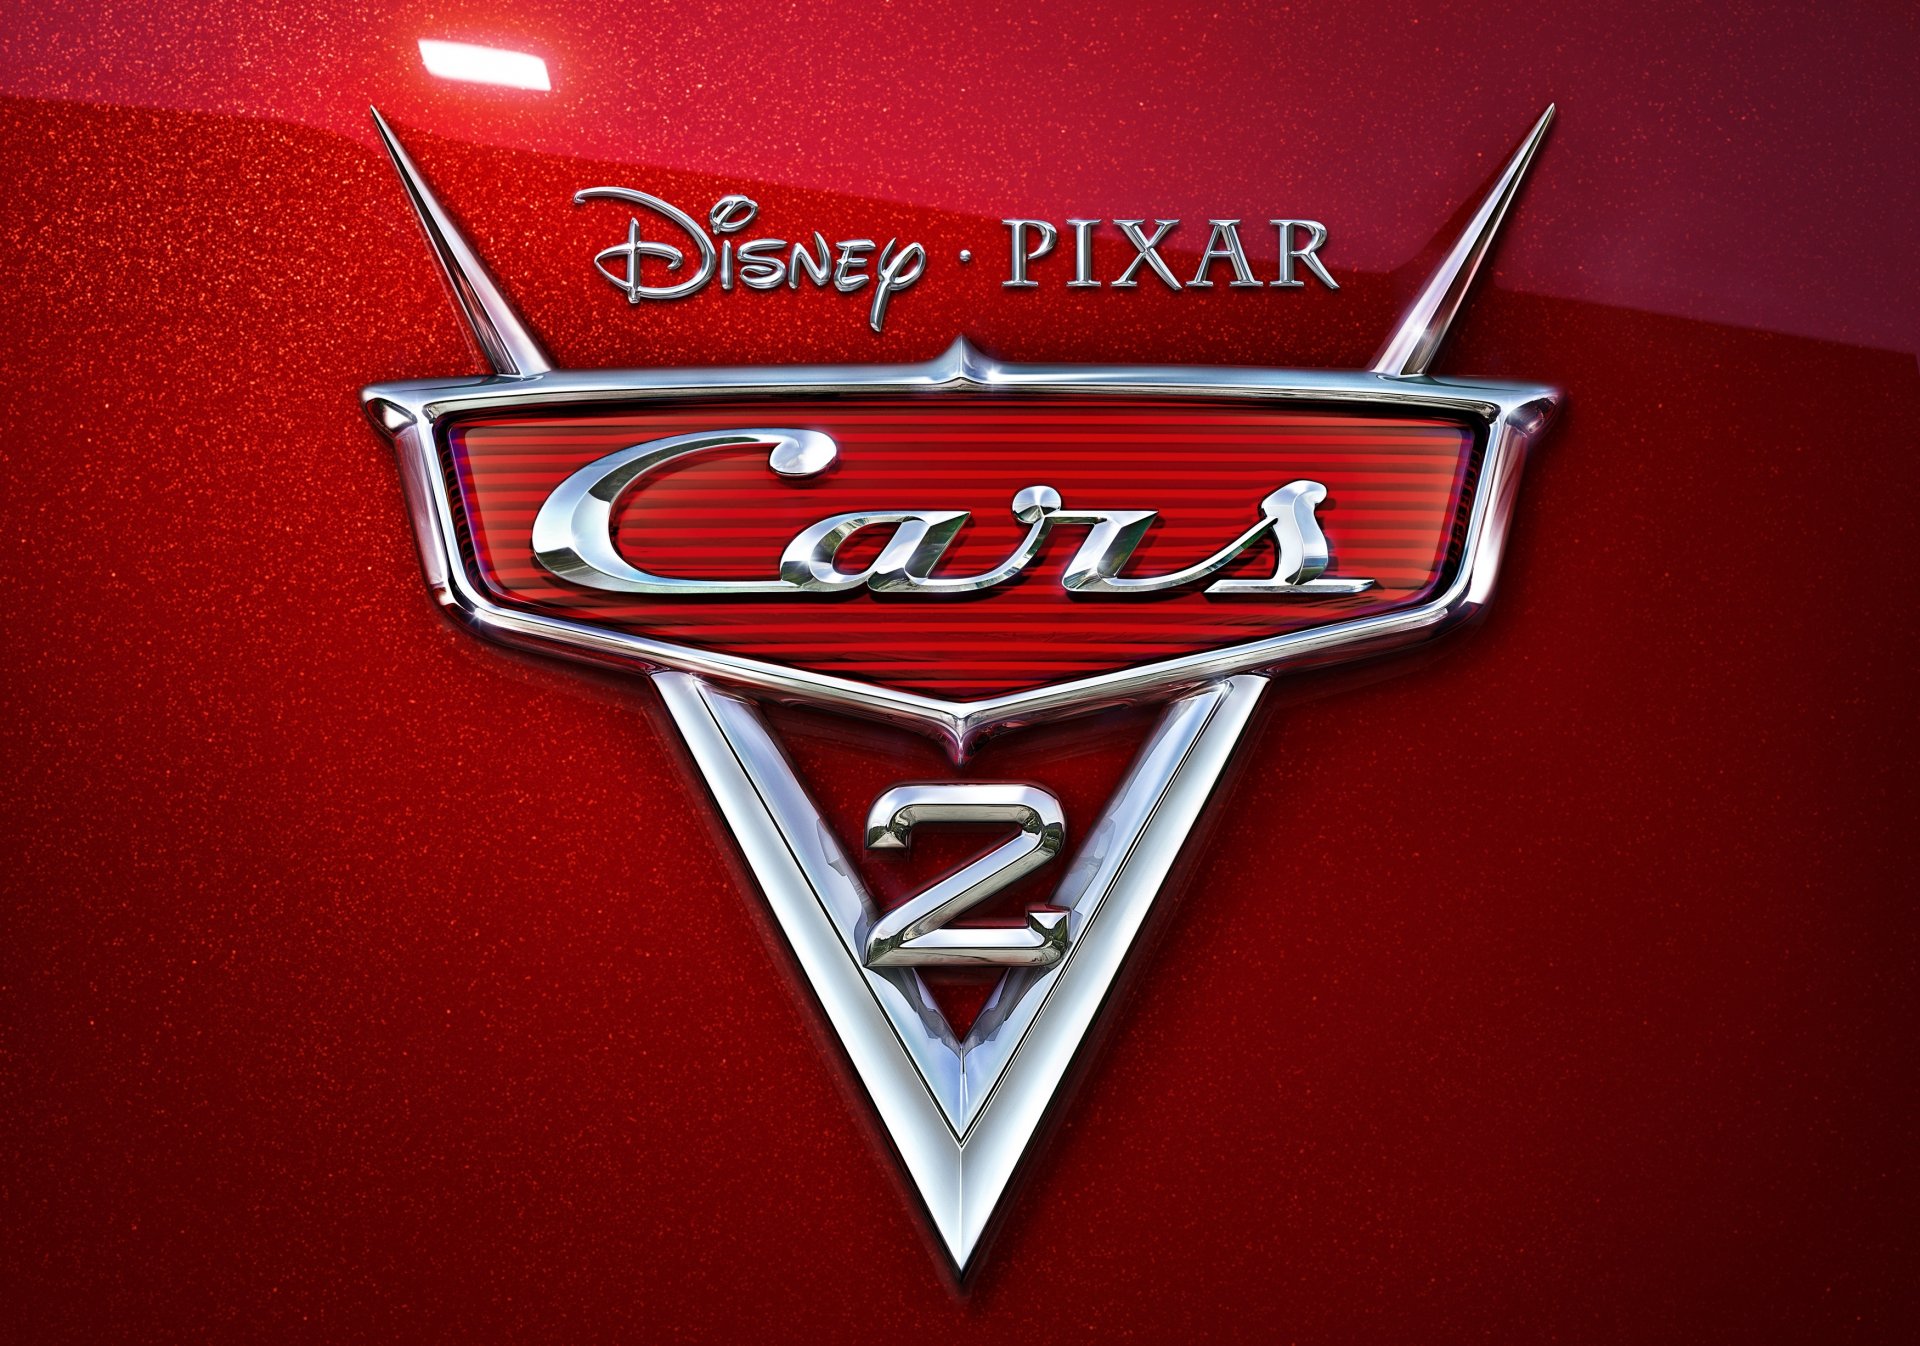 автомобили 2 тачки 2 мультфильм эмблема красный перламутр хром дисней pixar